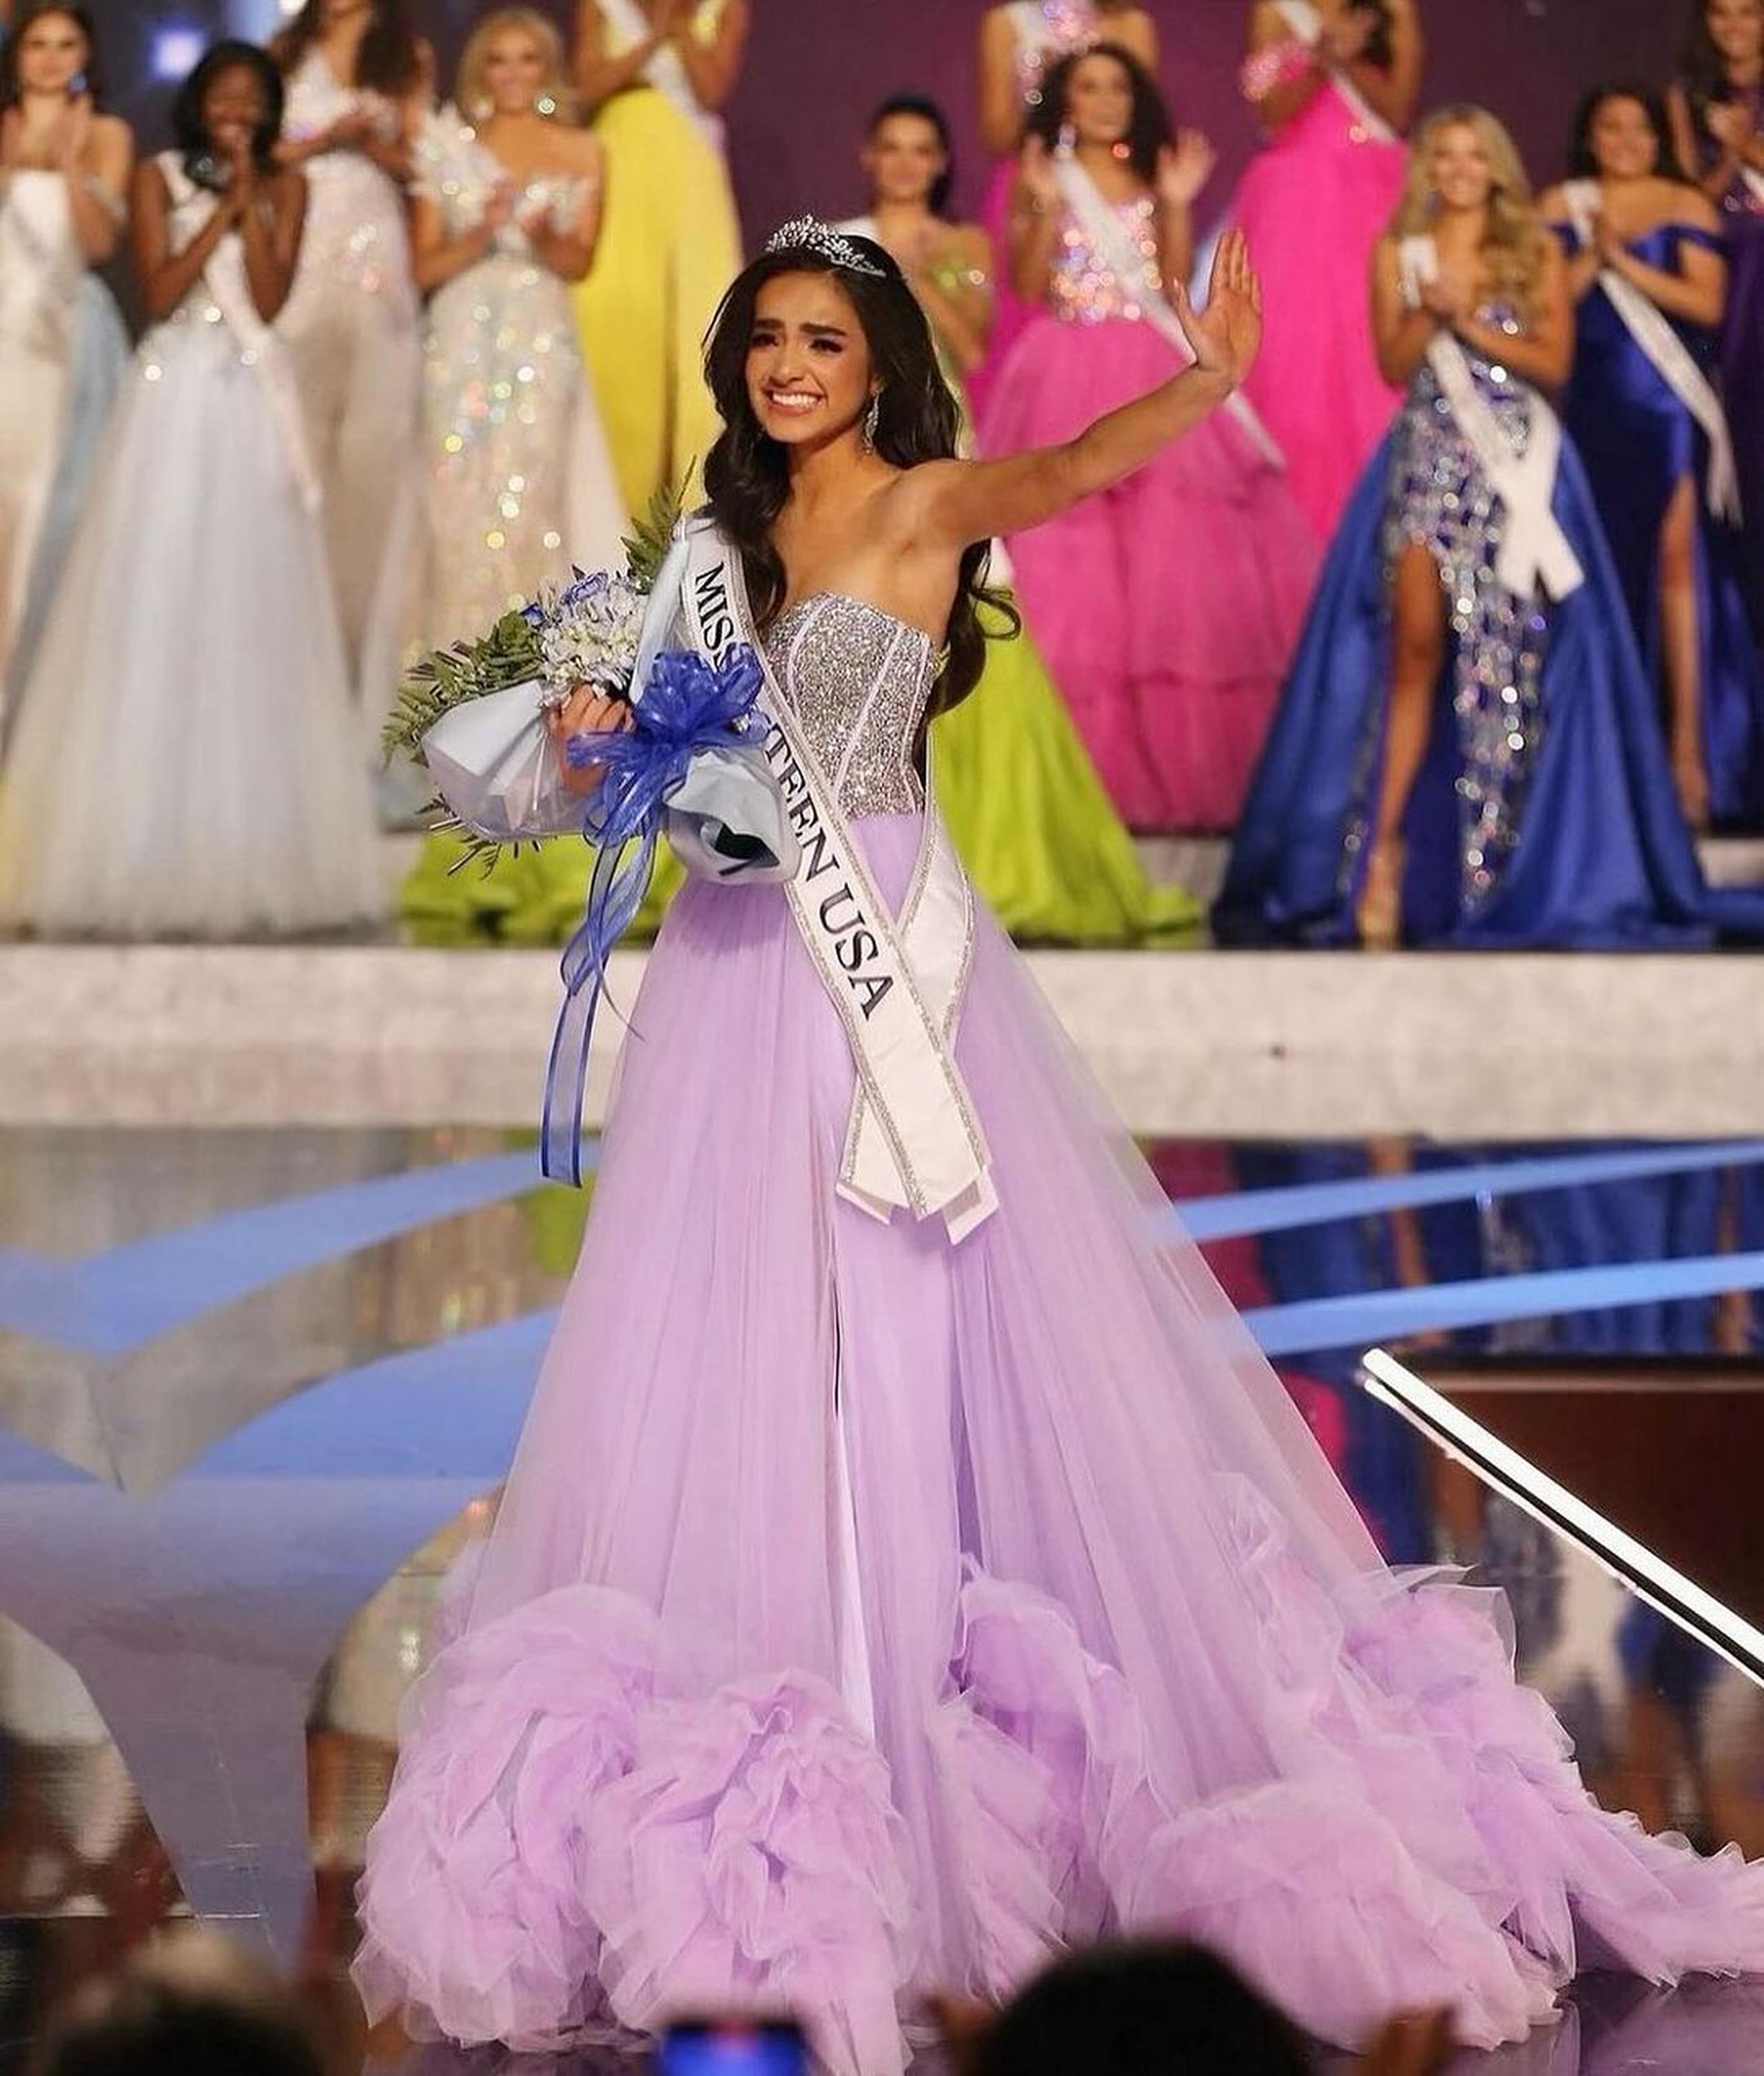 UmaSofia Srivastava, Miss Teen USA, anunció por Instagram que renunciaba a su corona porque sus valores personales "ya no se alinean completamente con la dirección de la organización”.